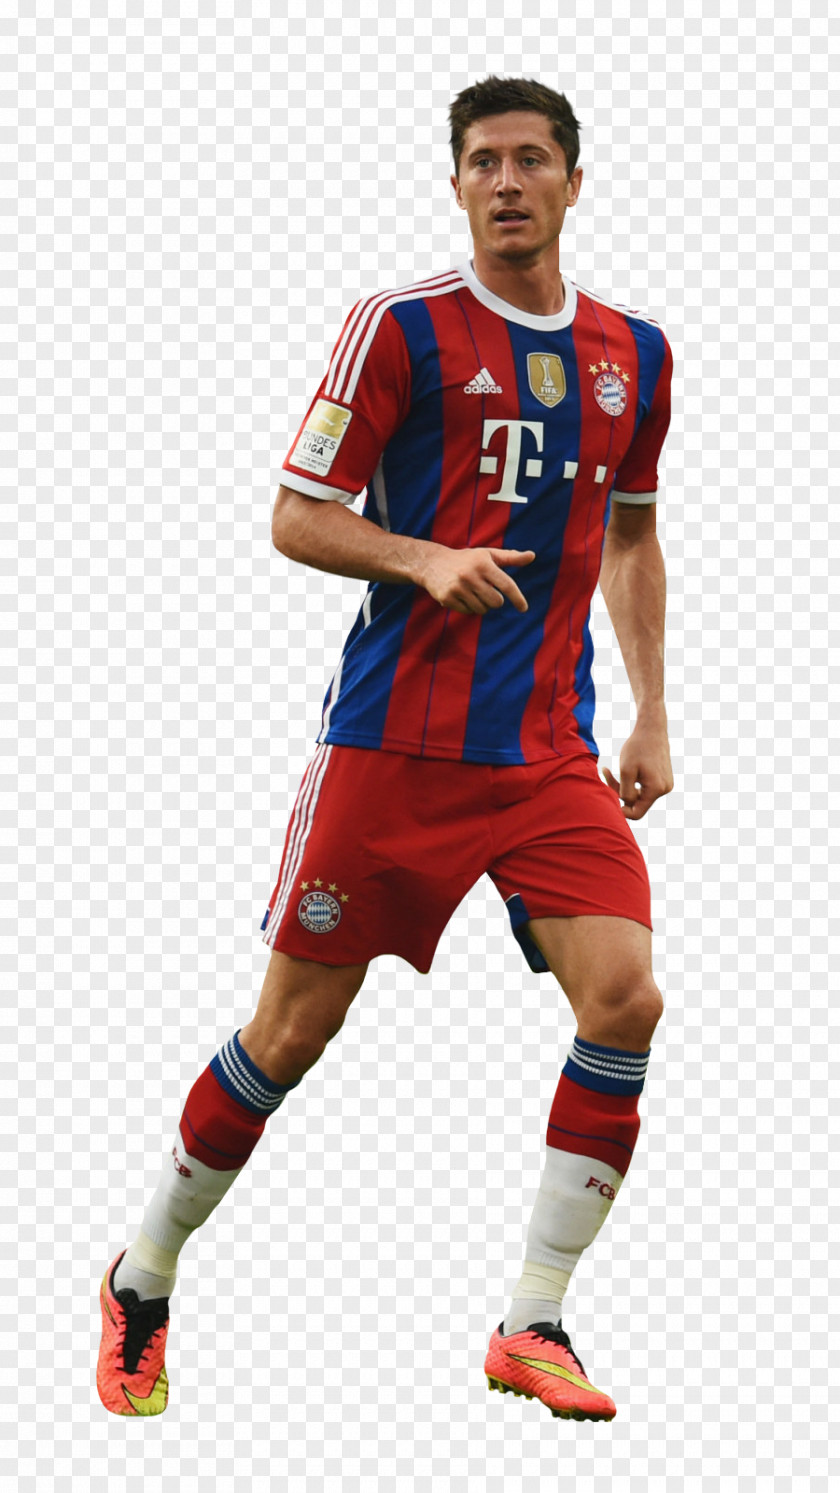 Munich Robert Lewandowski Soccer Player Sport Poland National Football Team PNG